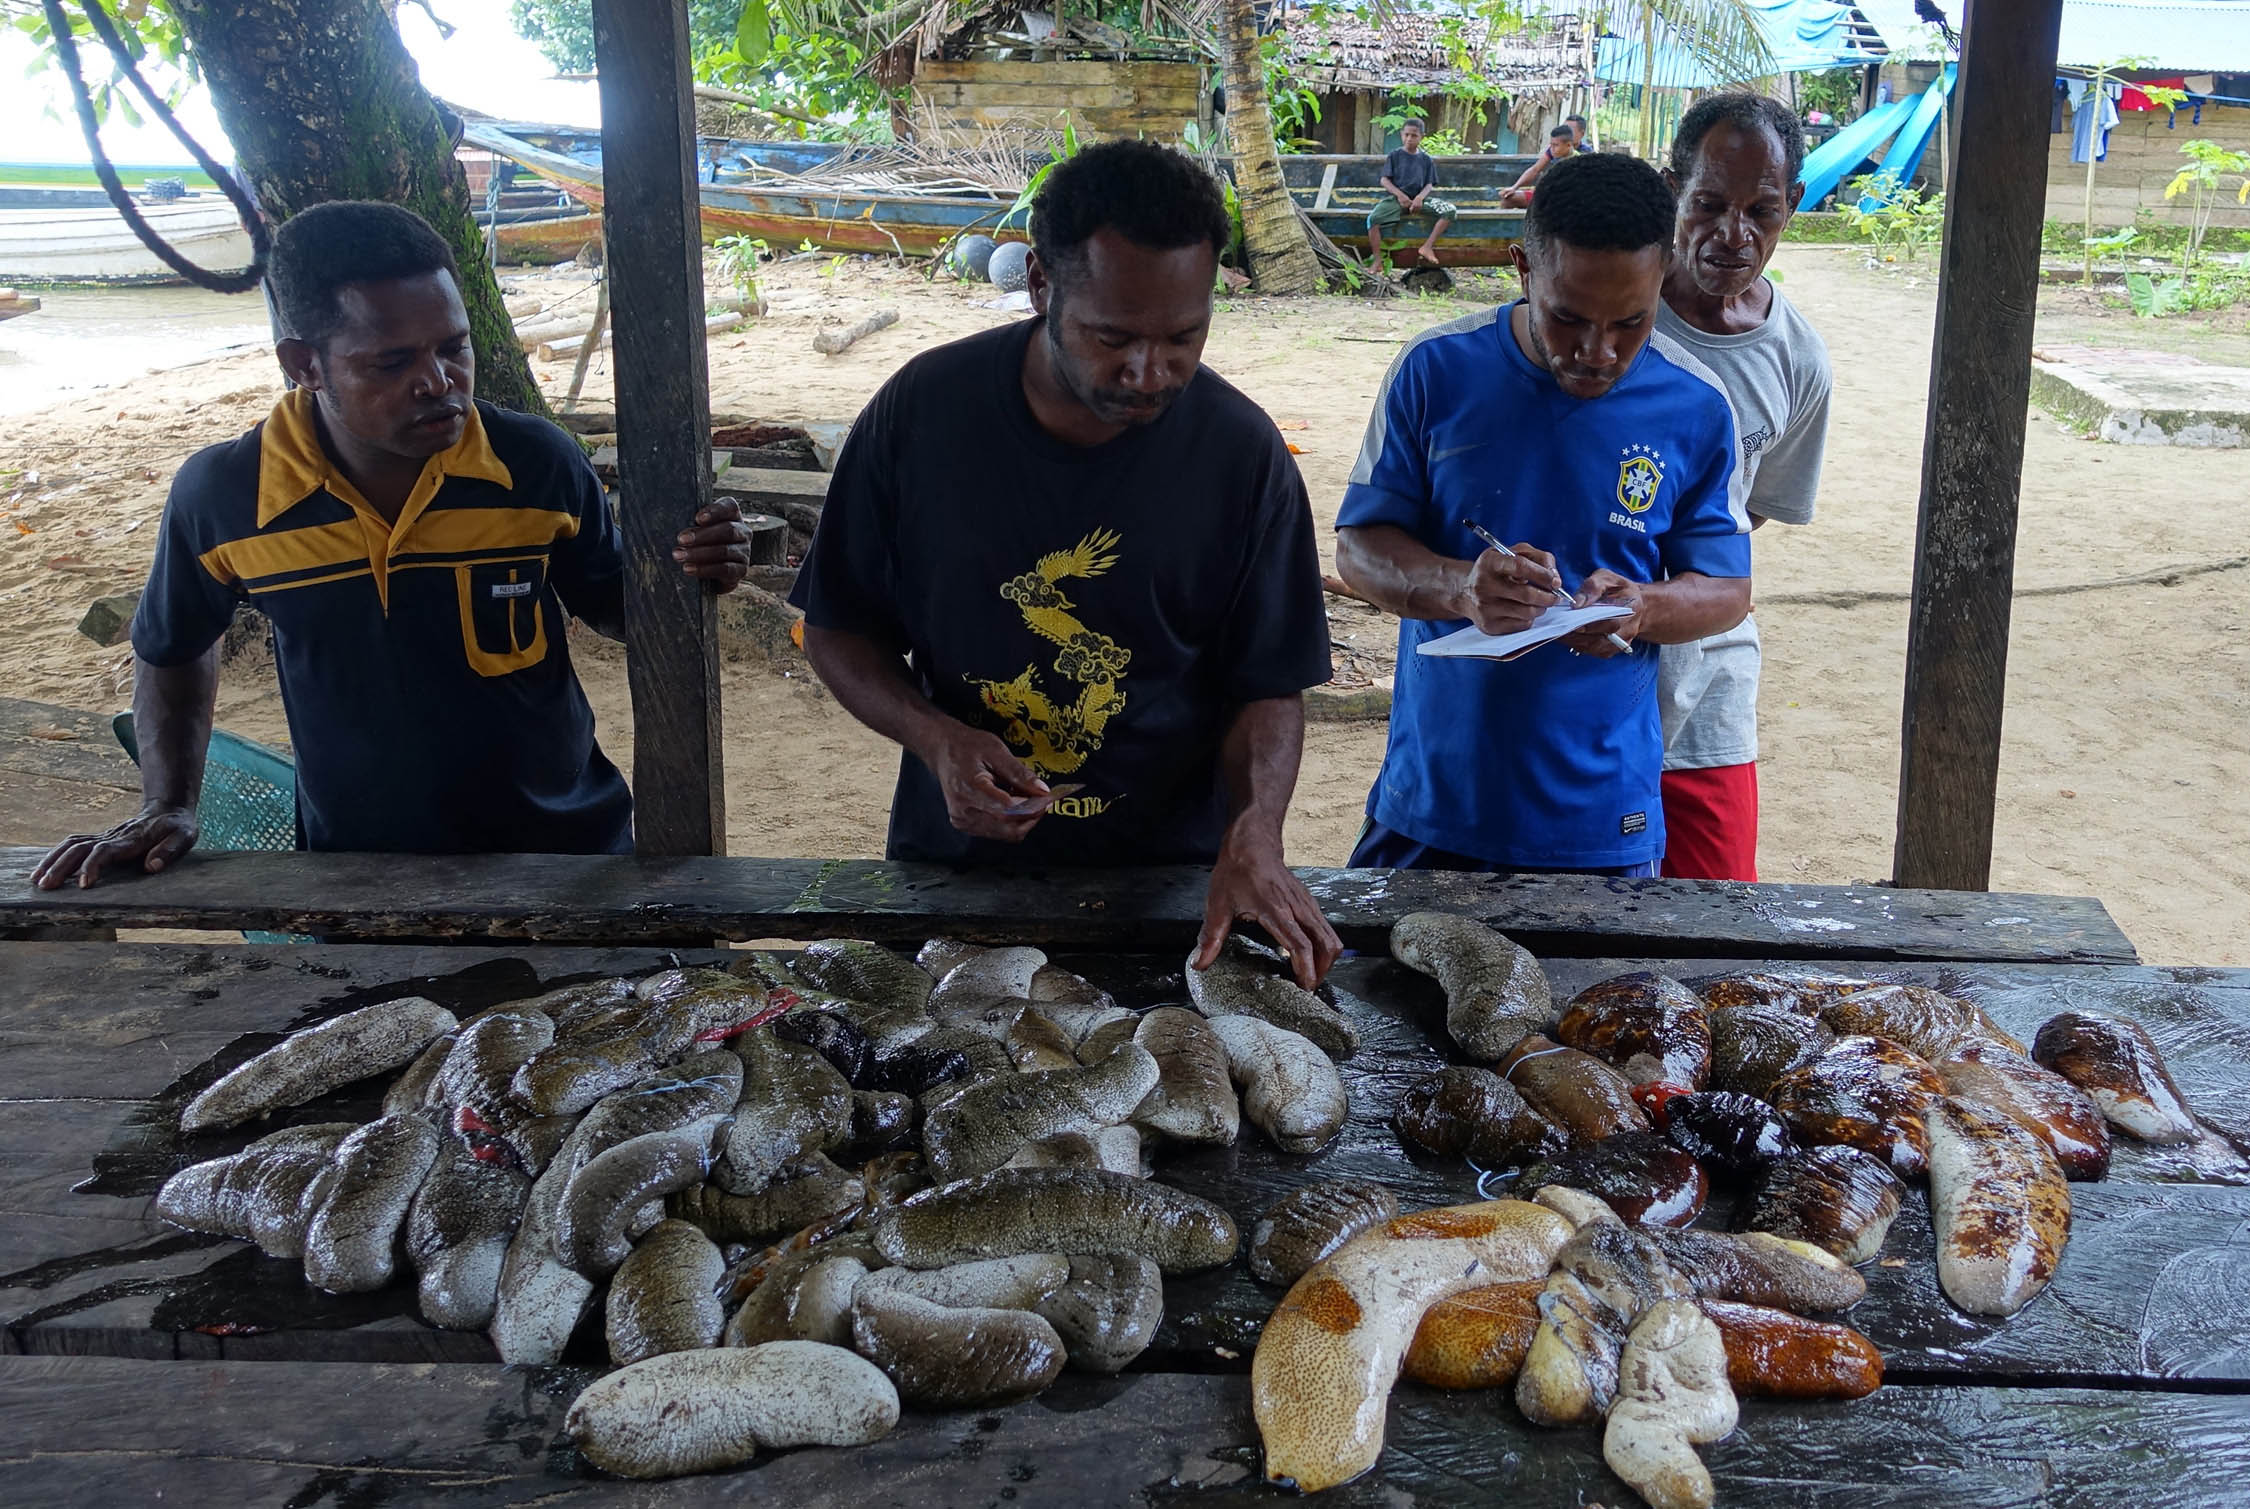 Tim monitoring melakukan pendataan hasil teripang yang didapat dari wilayah sasi di Kampung Folley, Kabupaten Raja Ampat, Papua Barat. Mereka mendata jenis teripang serta ukurannya | Foto: Nugroho Arif Prabowo/TNC/ Mongabay Indonesia